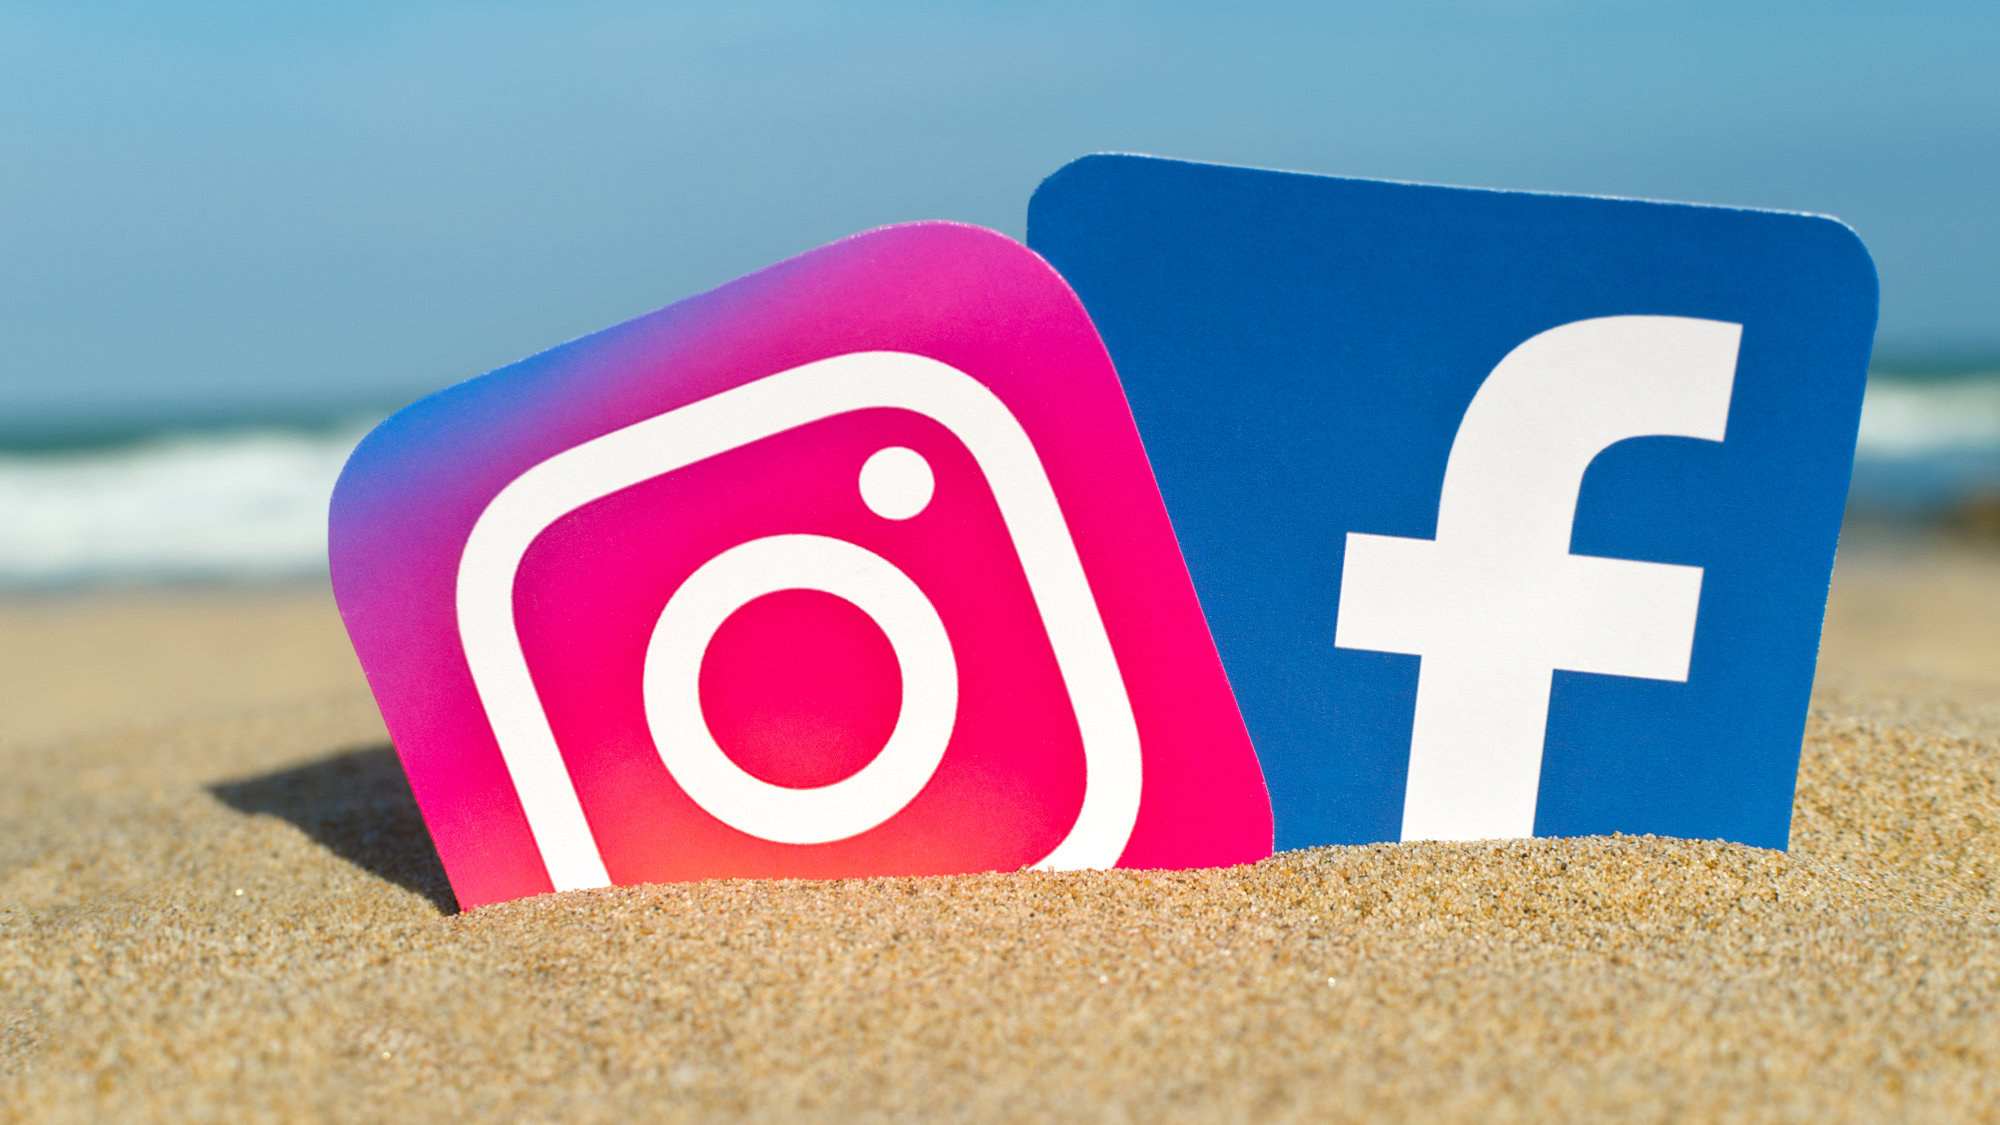 Προβλήματα αντιμετωπίζουν χρήστες του Facebook και Instagram